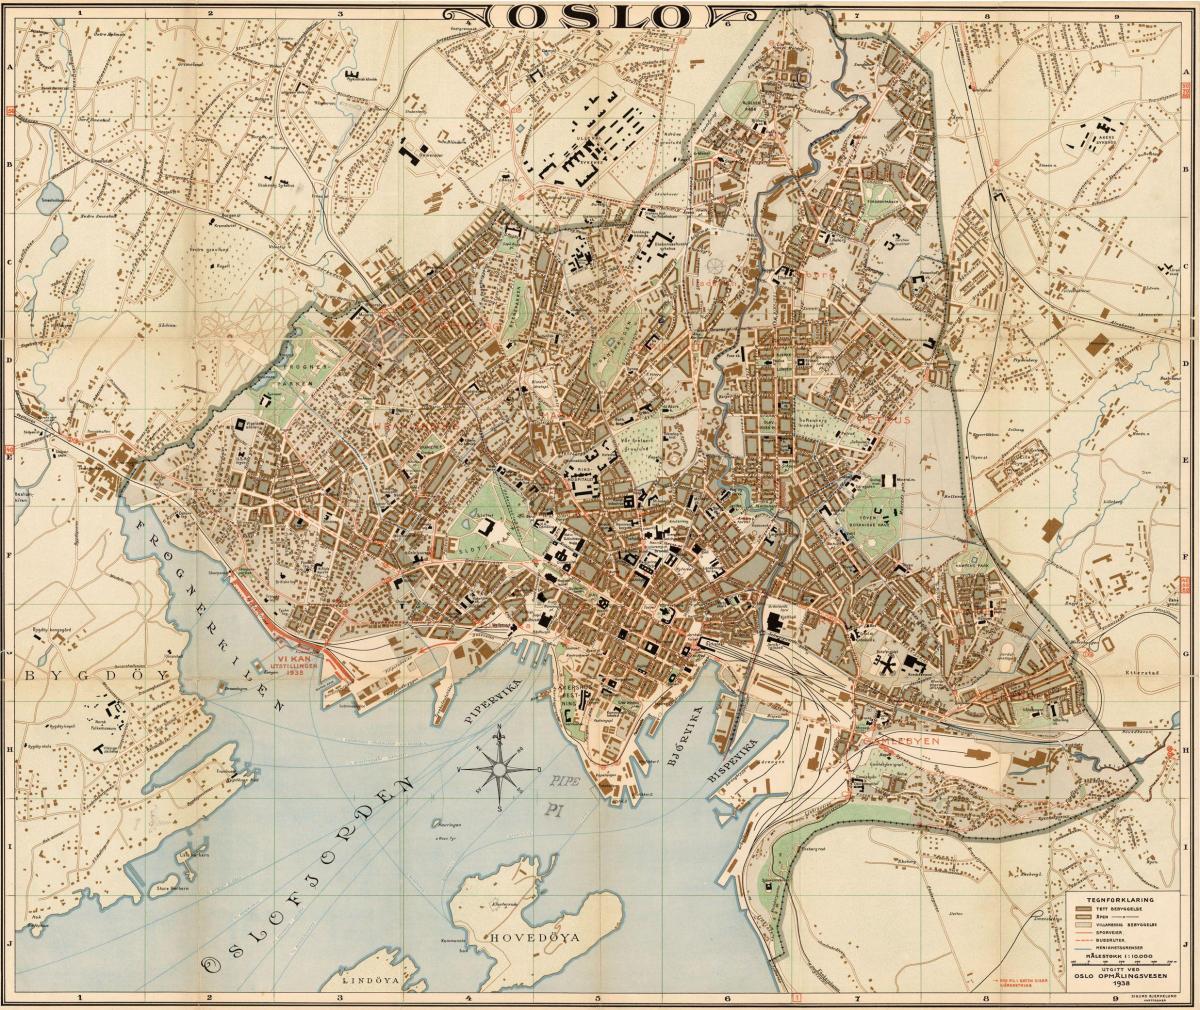 Oslo historische kaart